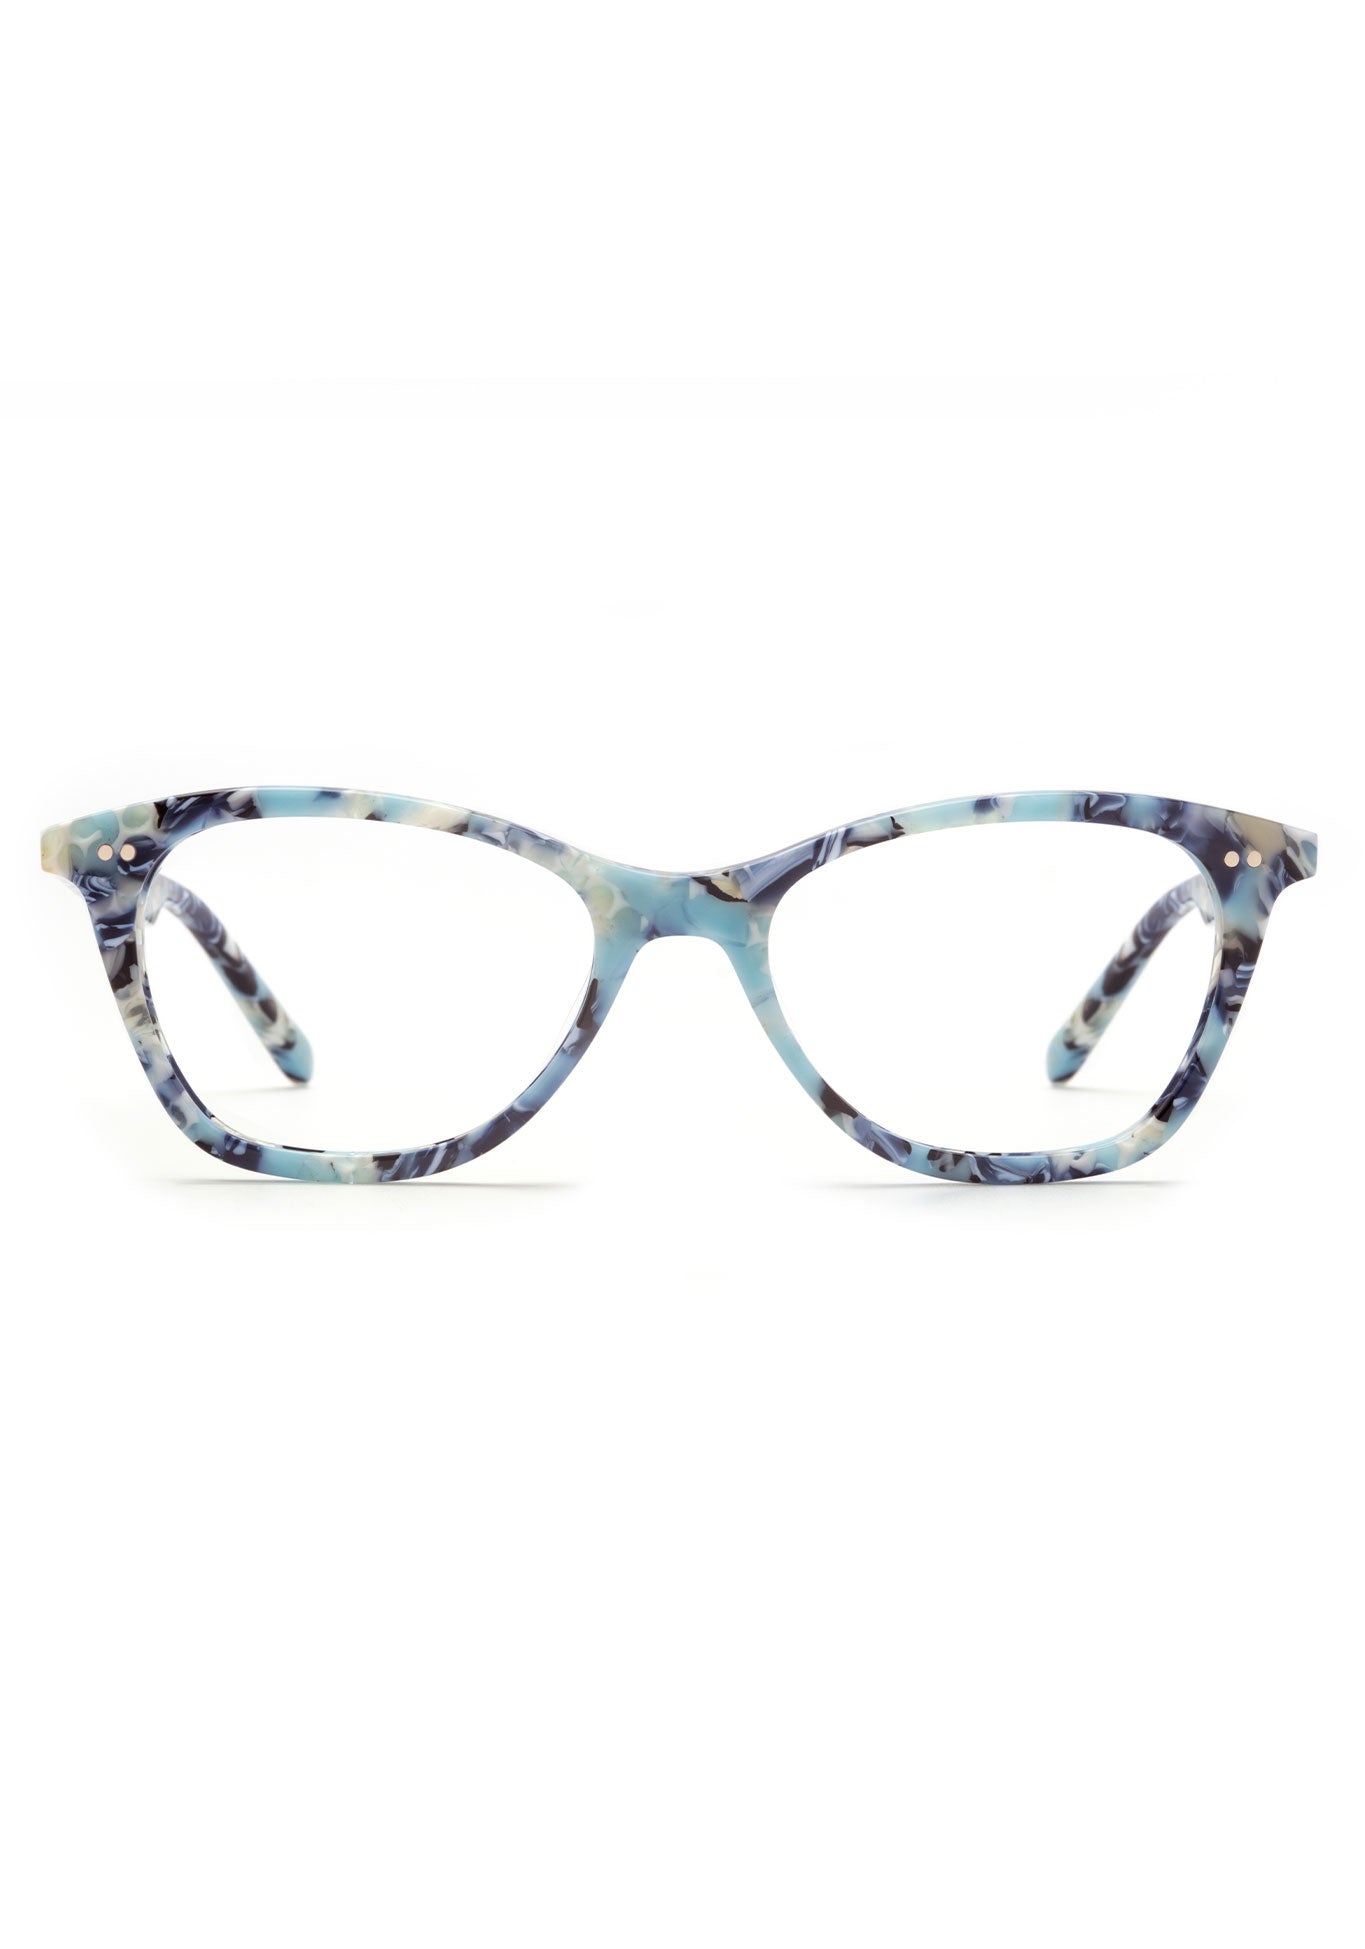 KREWE AMELIA | Azul Handcrafted, luxury blue acetate glasses